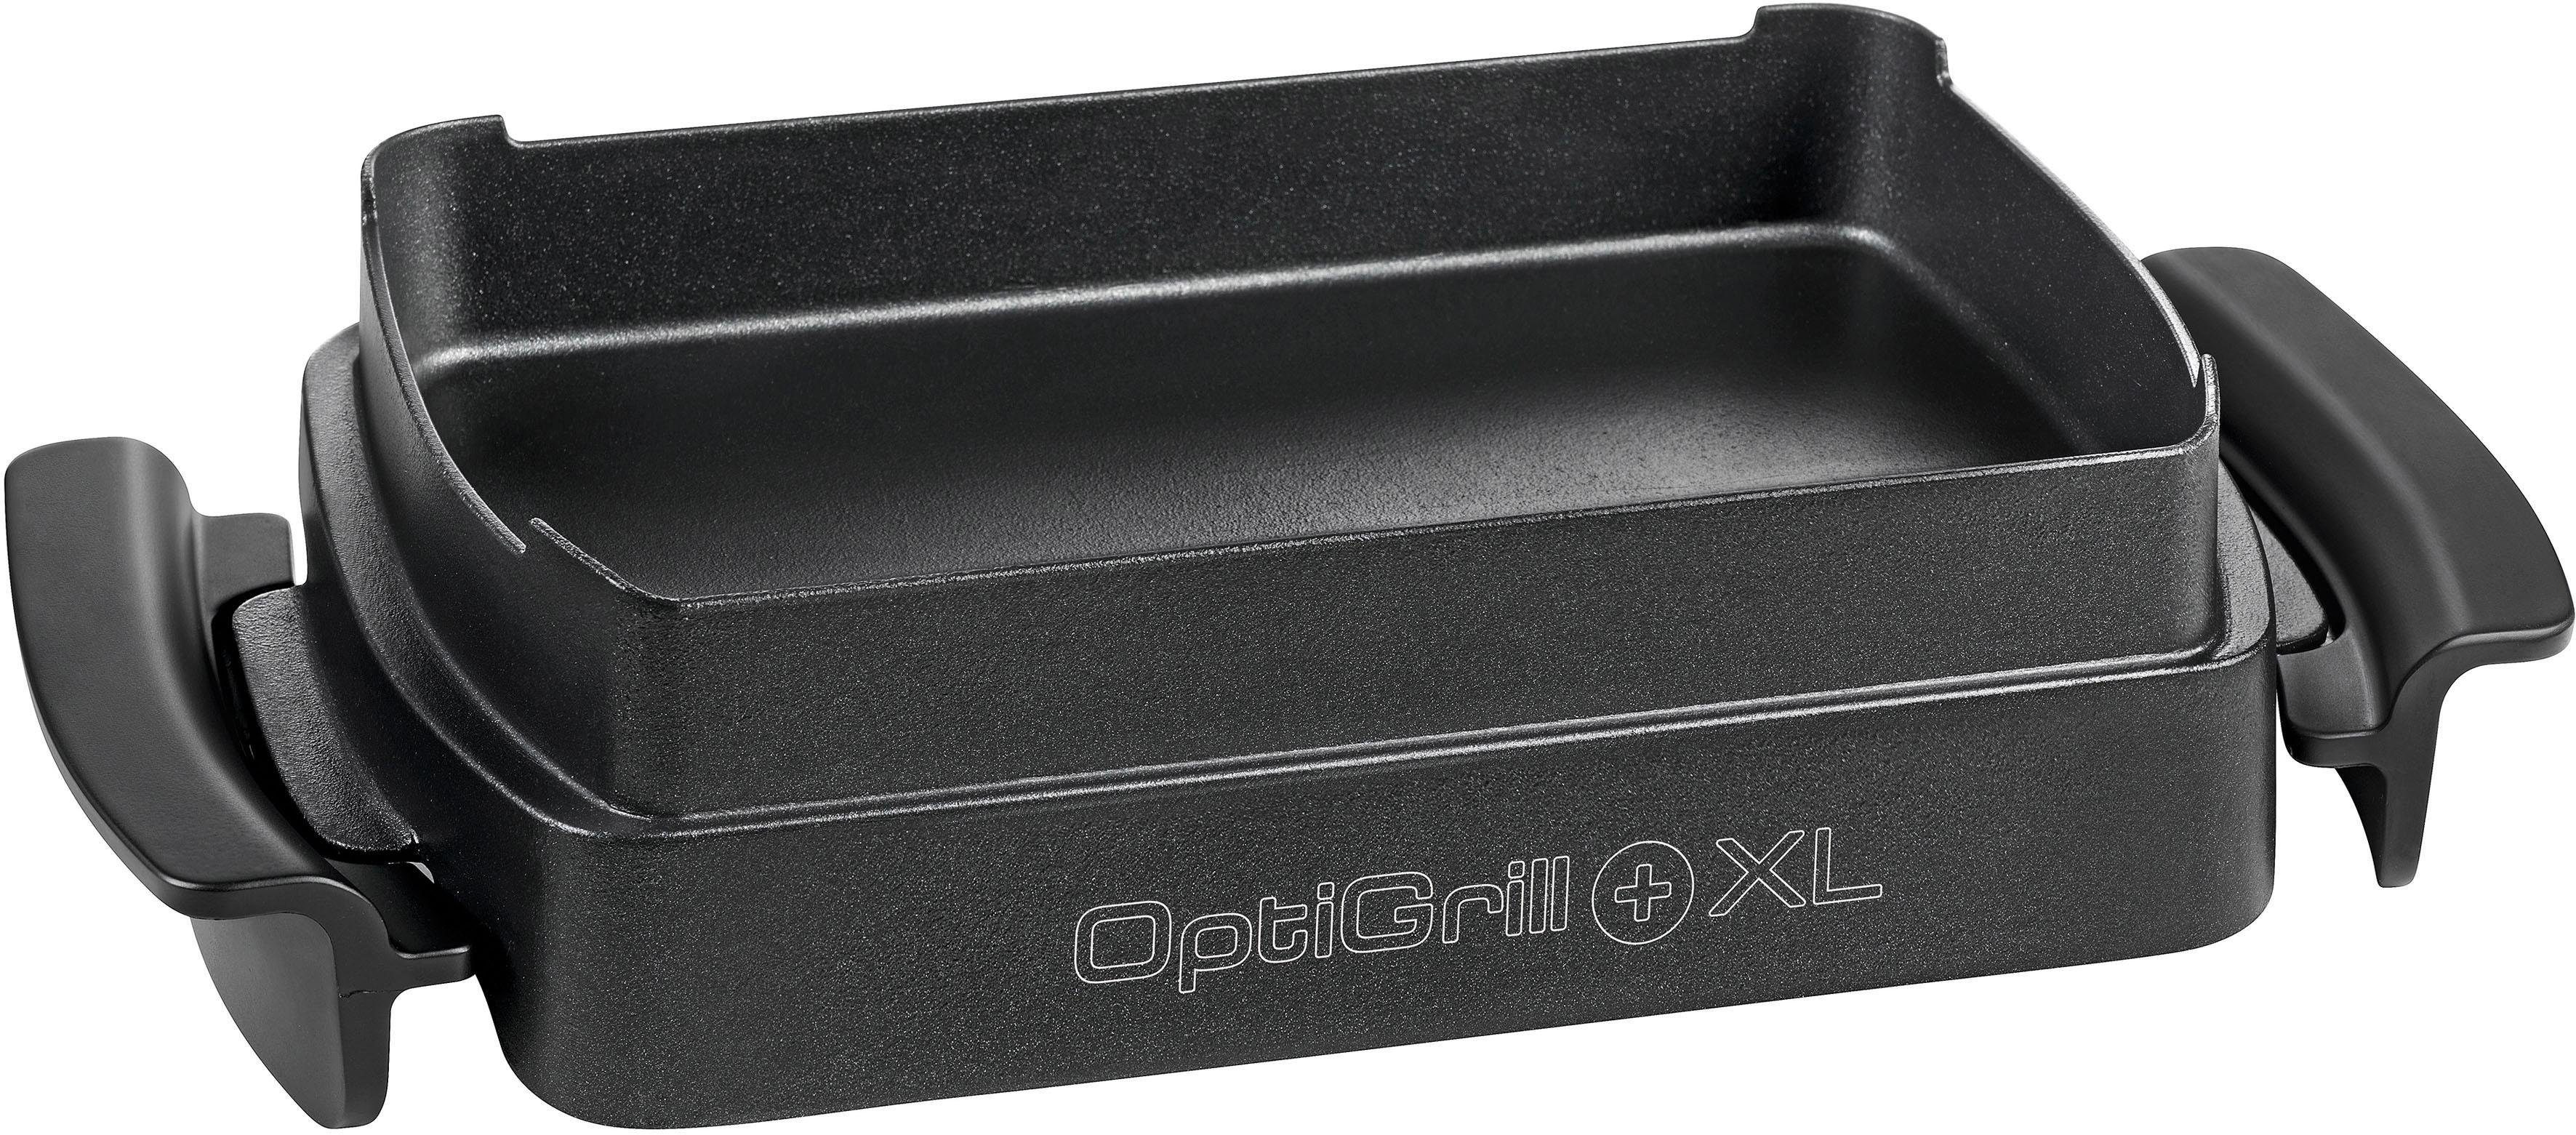 Tefal Backeinsatz XA7268 OptiGrill Snacking & Baking XL, Zubehör für  OptiGrill XL (GC722D), nur passend für OptiGrill Plus XL (GC722D)